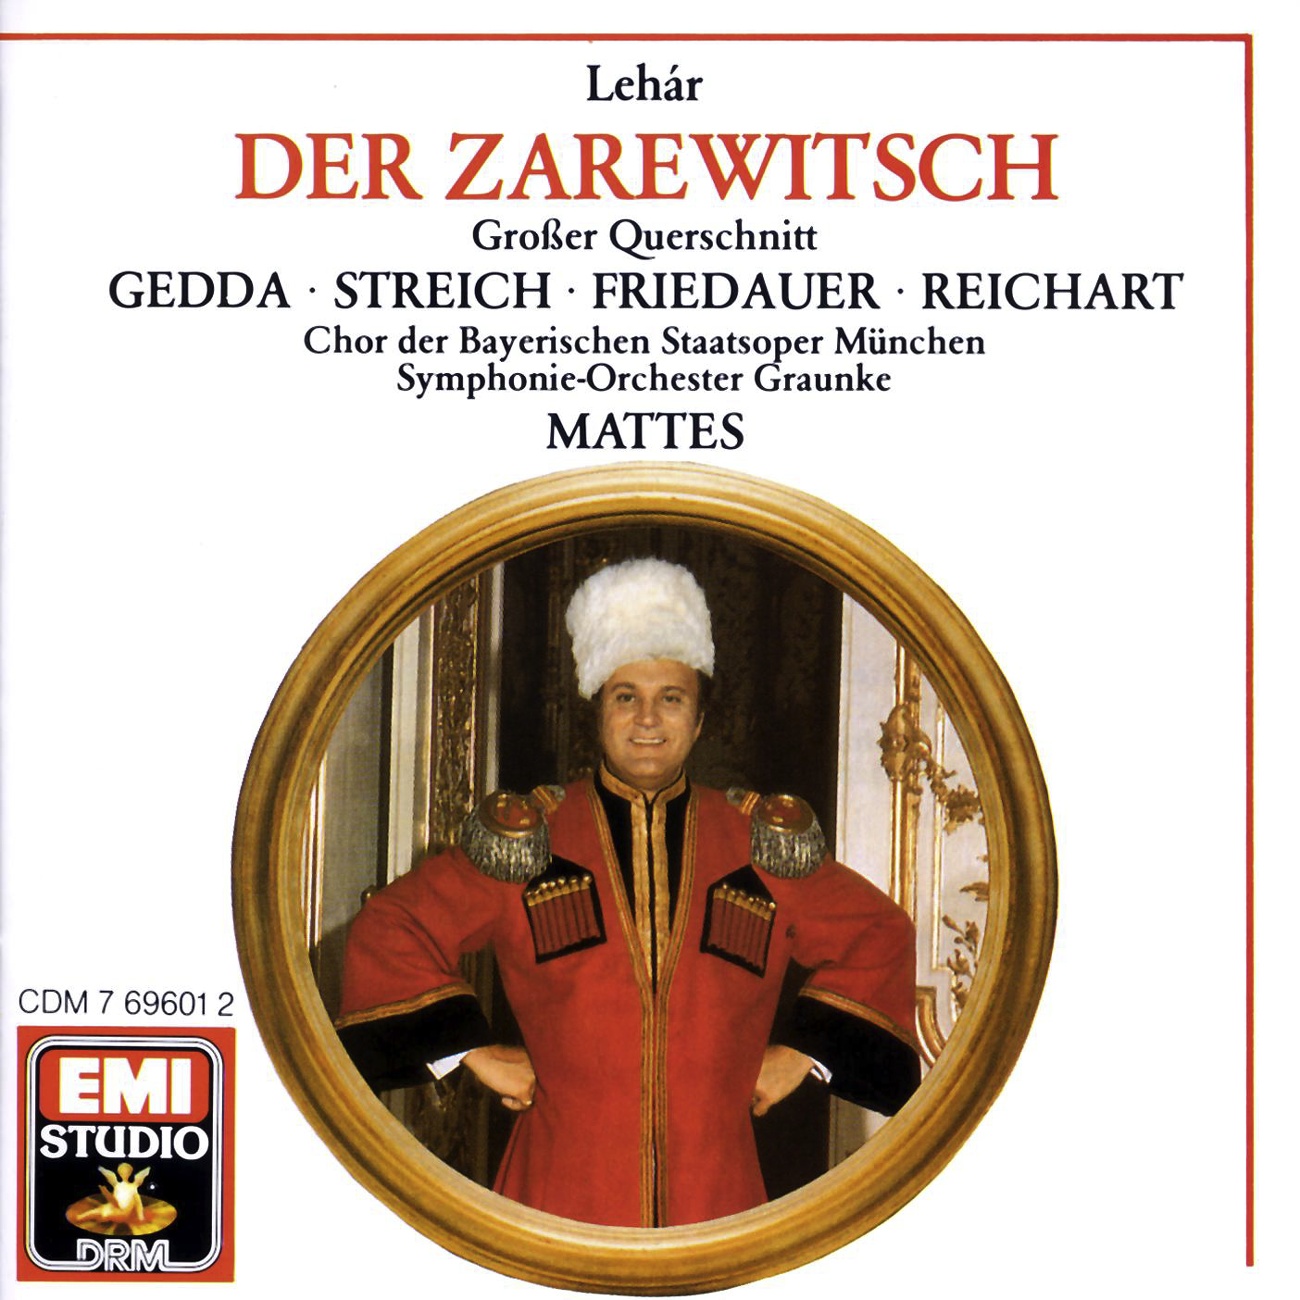 Der Zarewitsch  Highlights 1988 Digital Remaster, Zweiter Akt: Liebe mich, kü sse mich Sonja  Zarewitsch